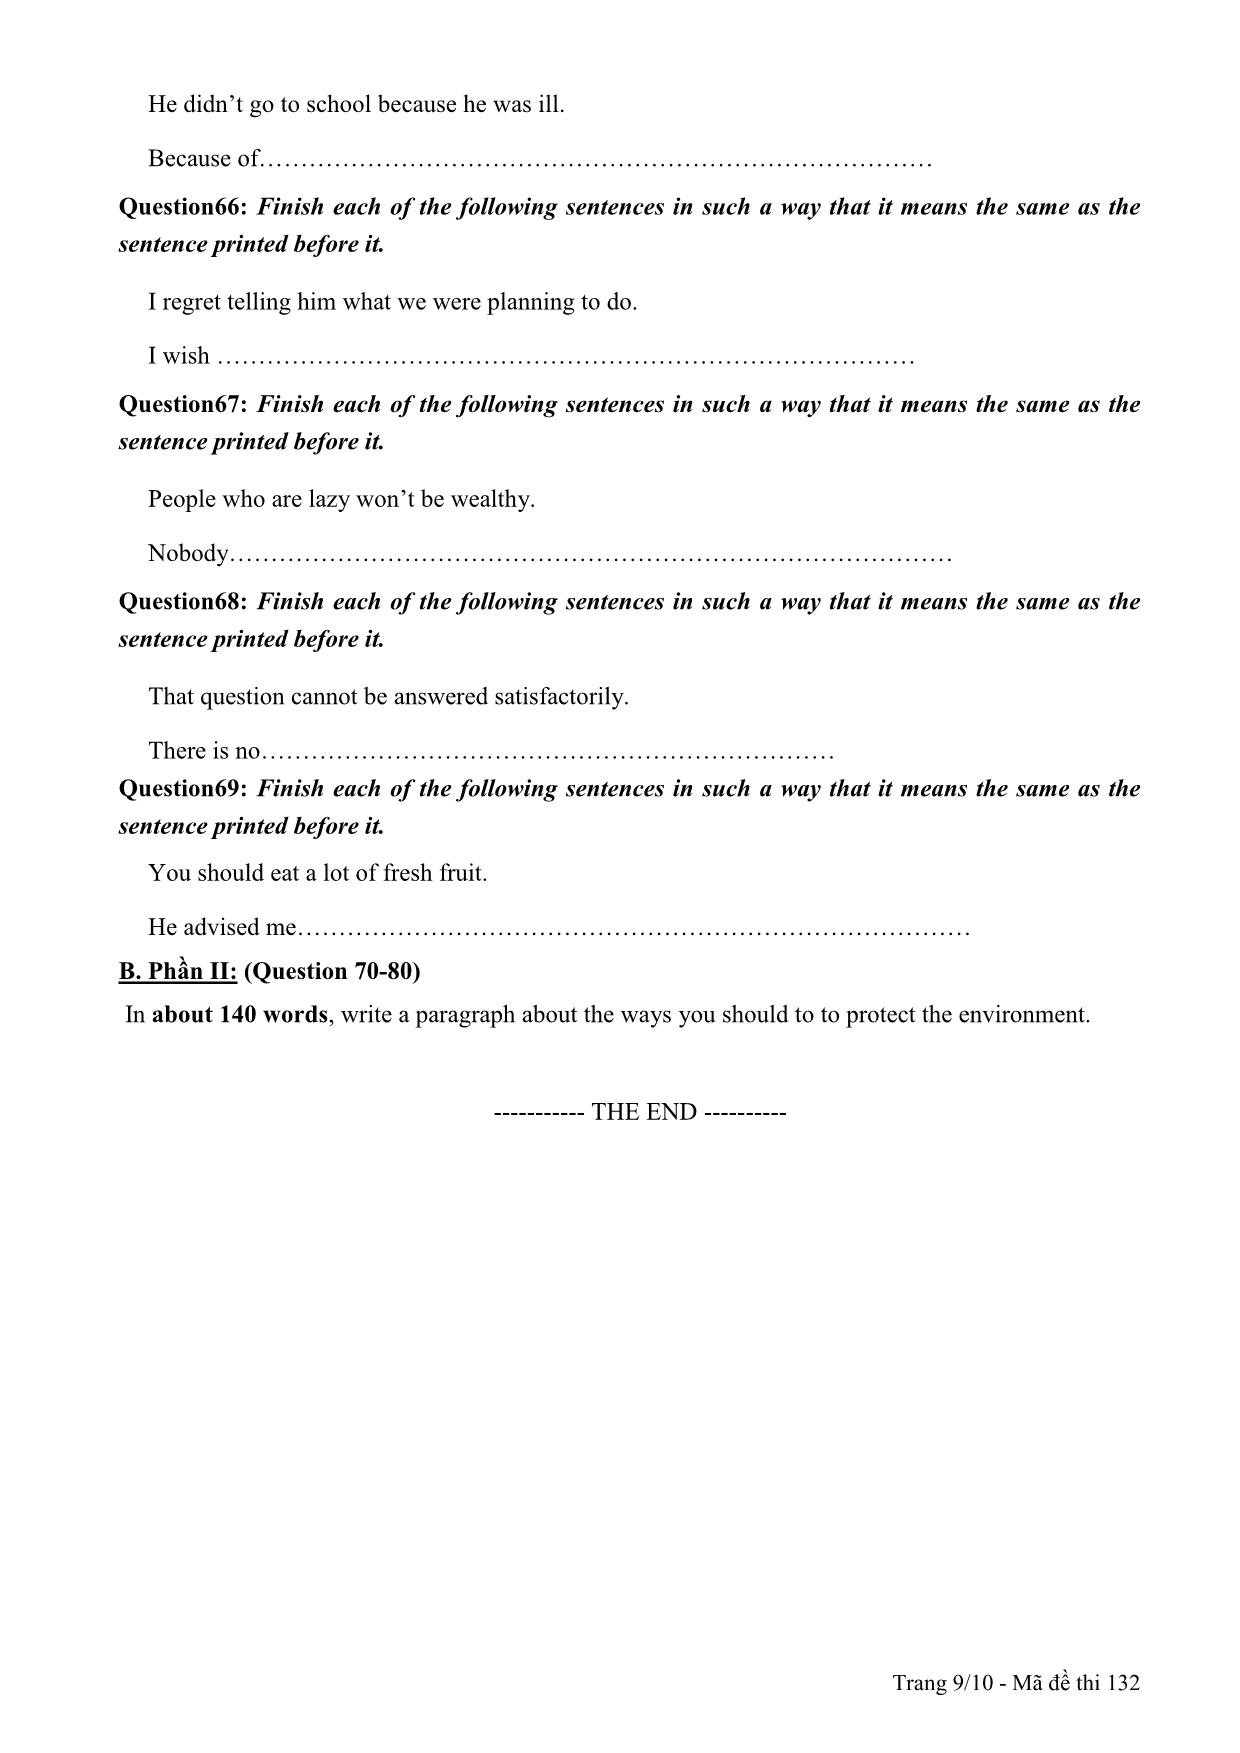 Đề thi thử THPT Quốc gia môn Tiếng Anh - Mã đề 132 - Năm học 2014-2015 - Trường THPT Lương Ngọc Quyến (Có đáp án) trang 9